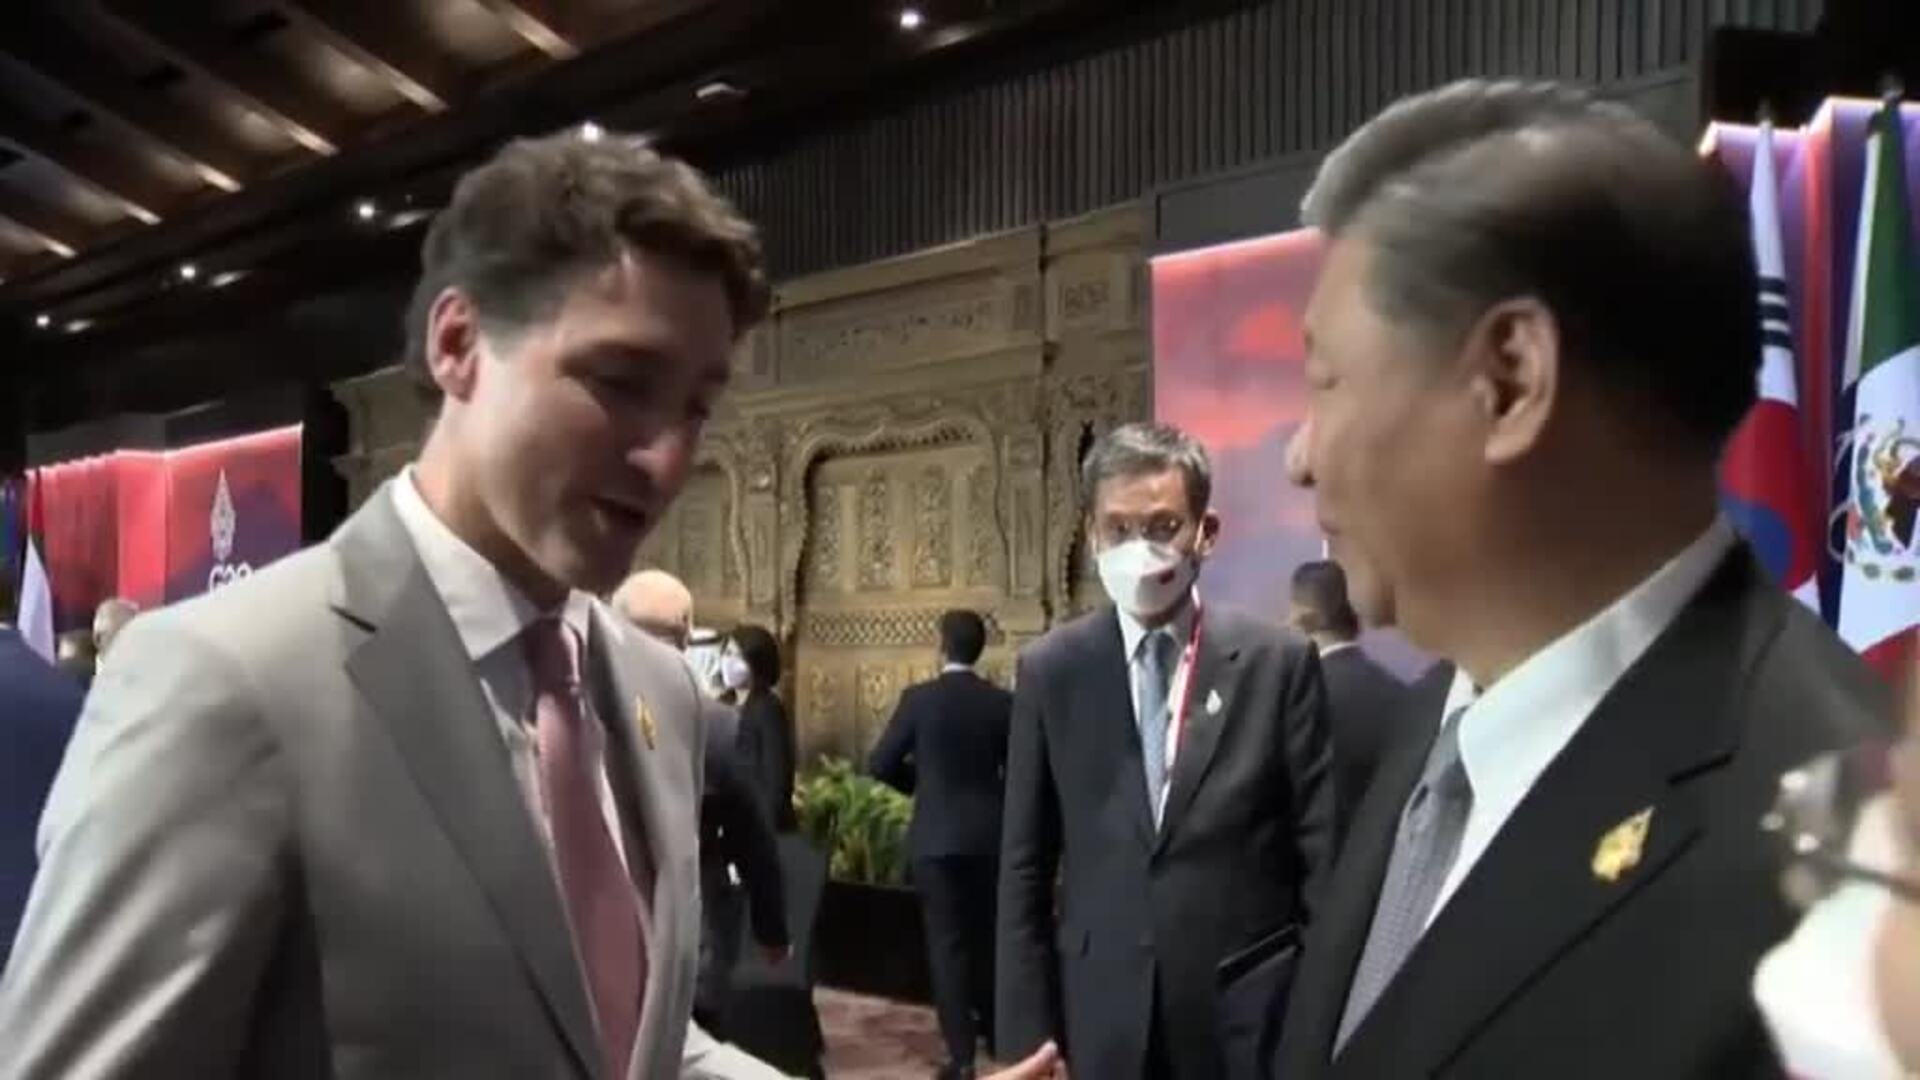 Xi Jinping recrimina a Trudeau haber filtrado una conversación privada a la prensa